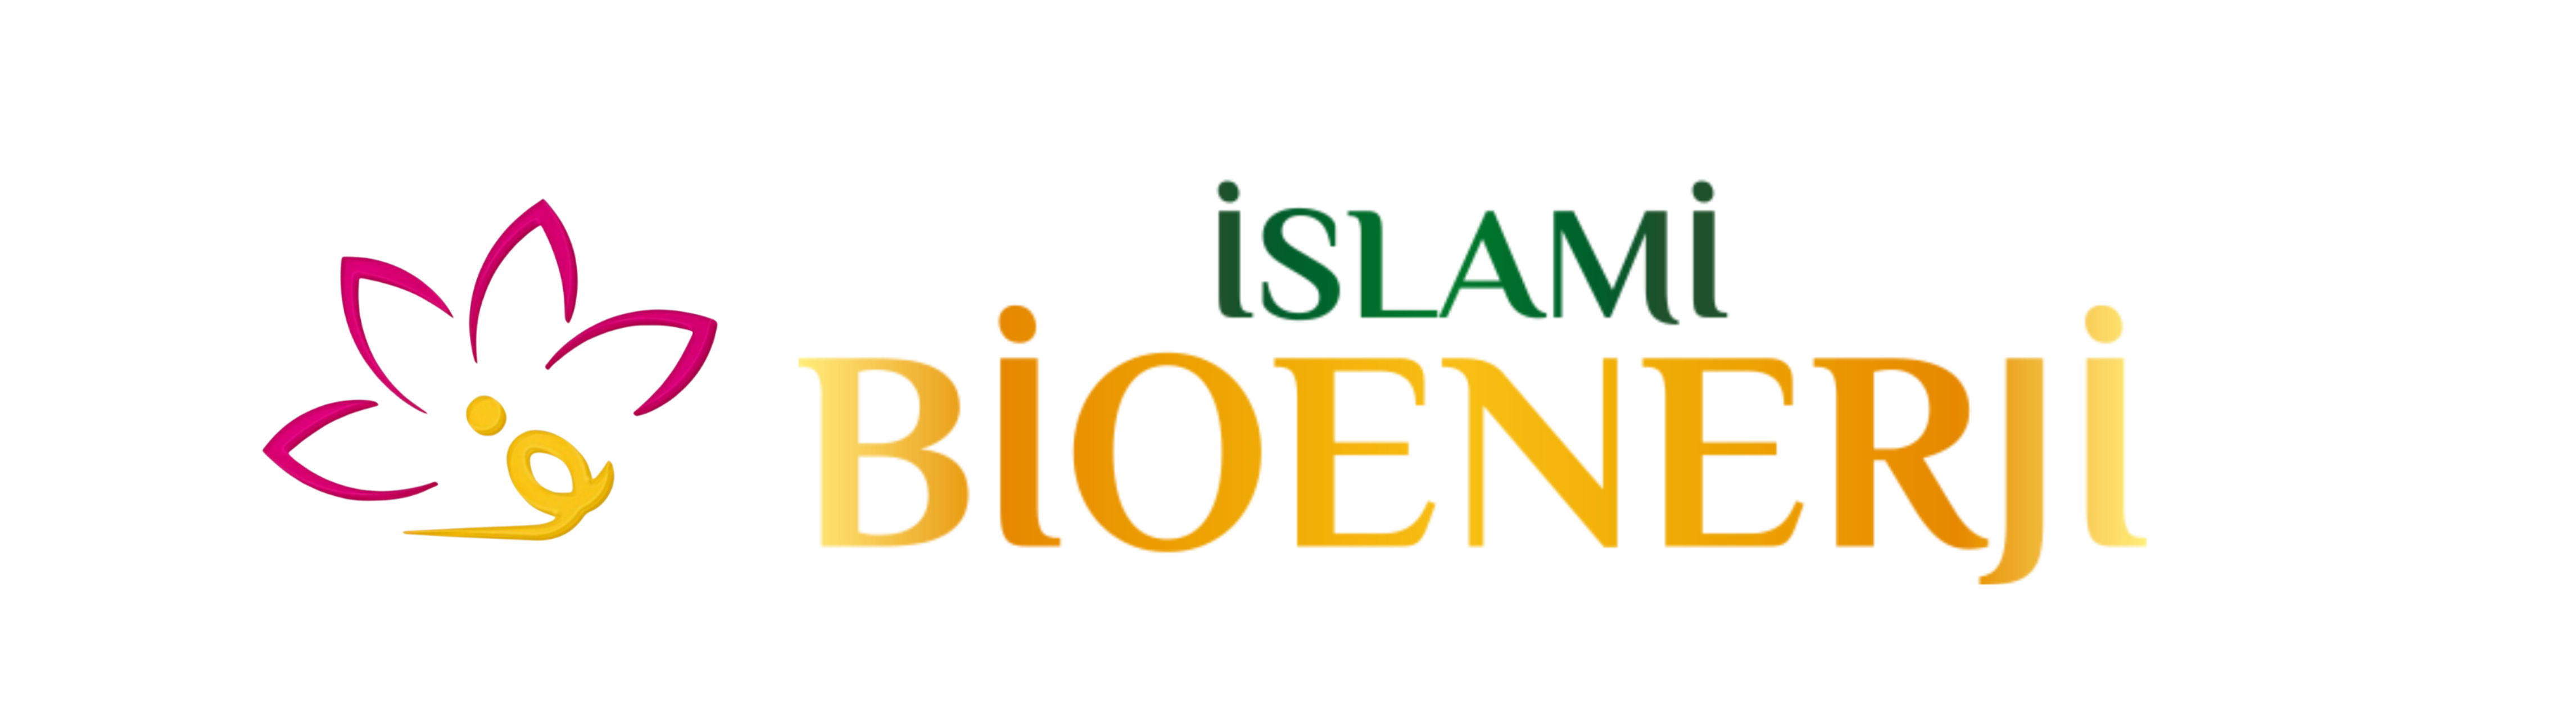 İslami Bioenerji